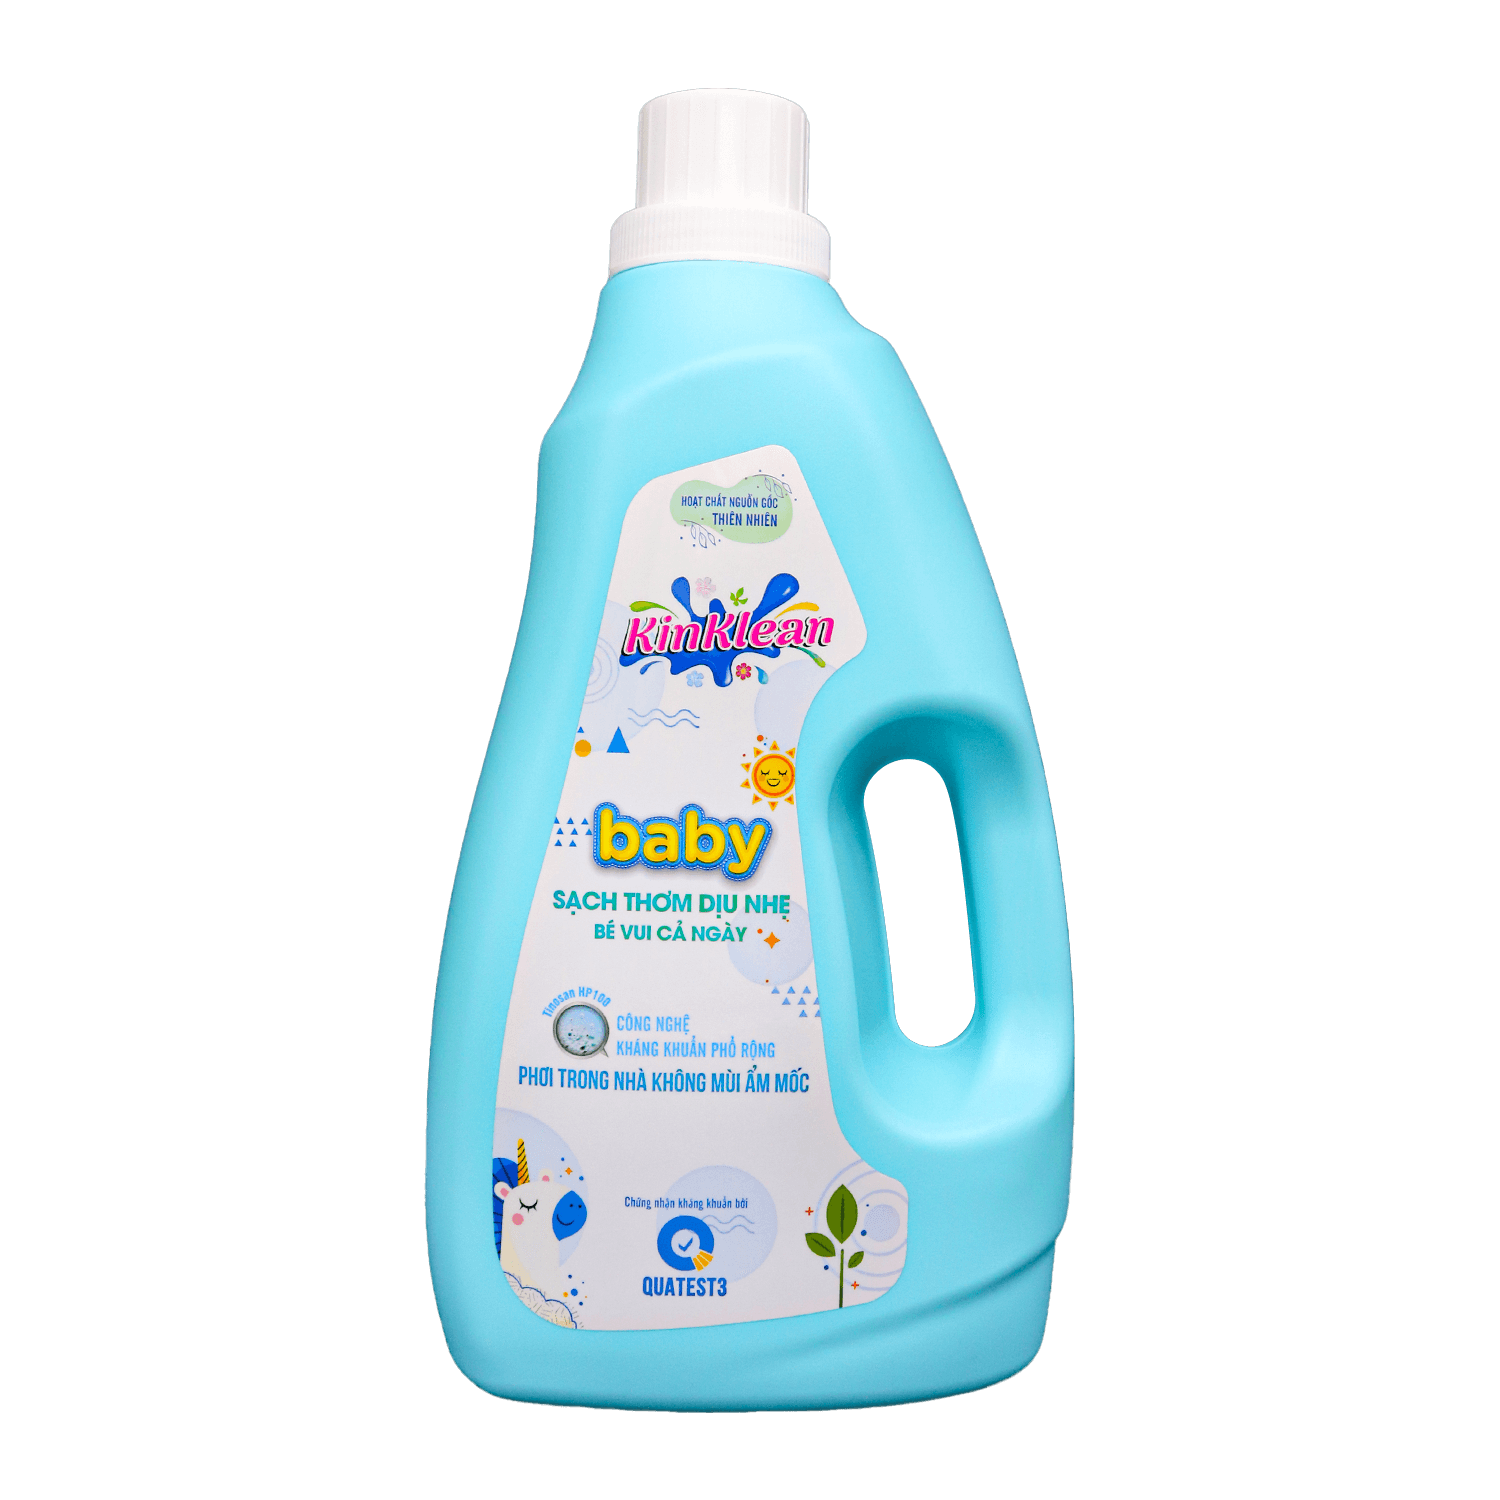 Nước giặt xả KinKlean Baby sạch thơm dịu nhẹ và an toàn cho da bé 2,4KG